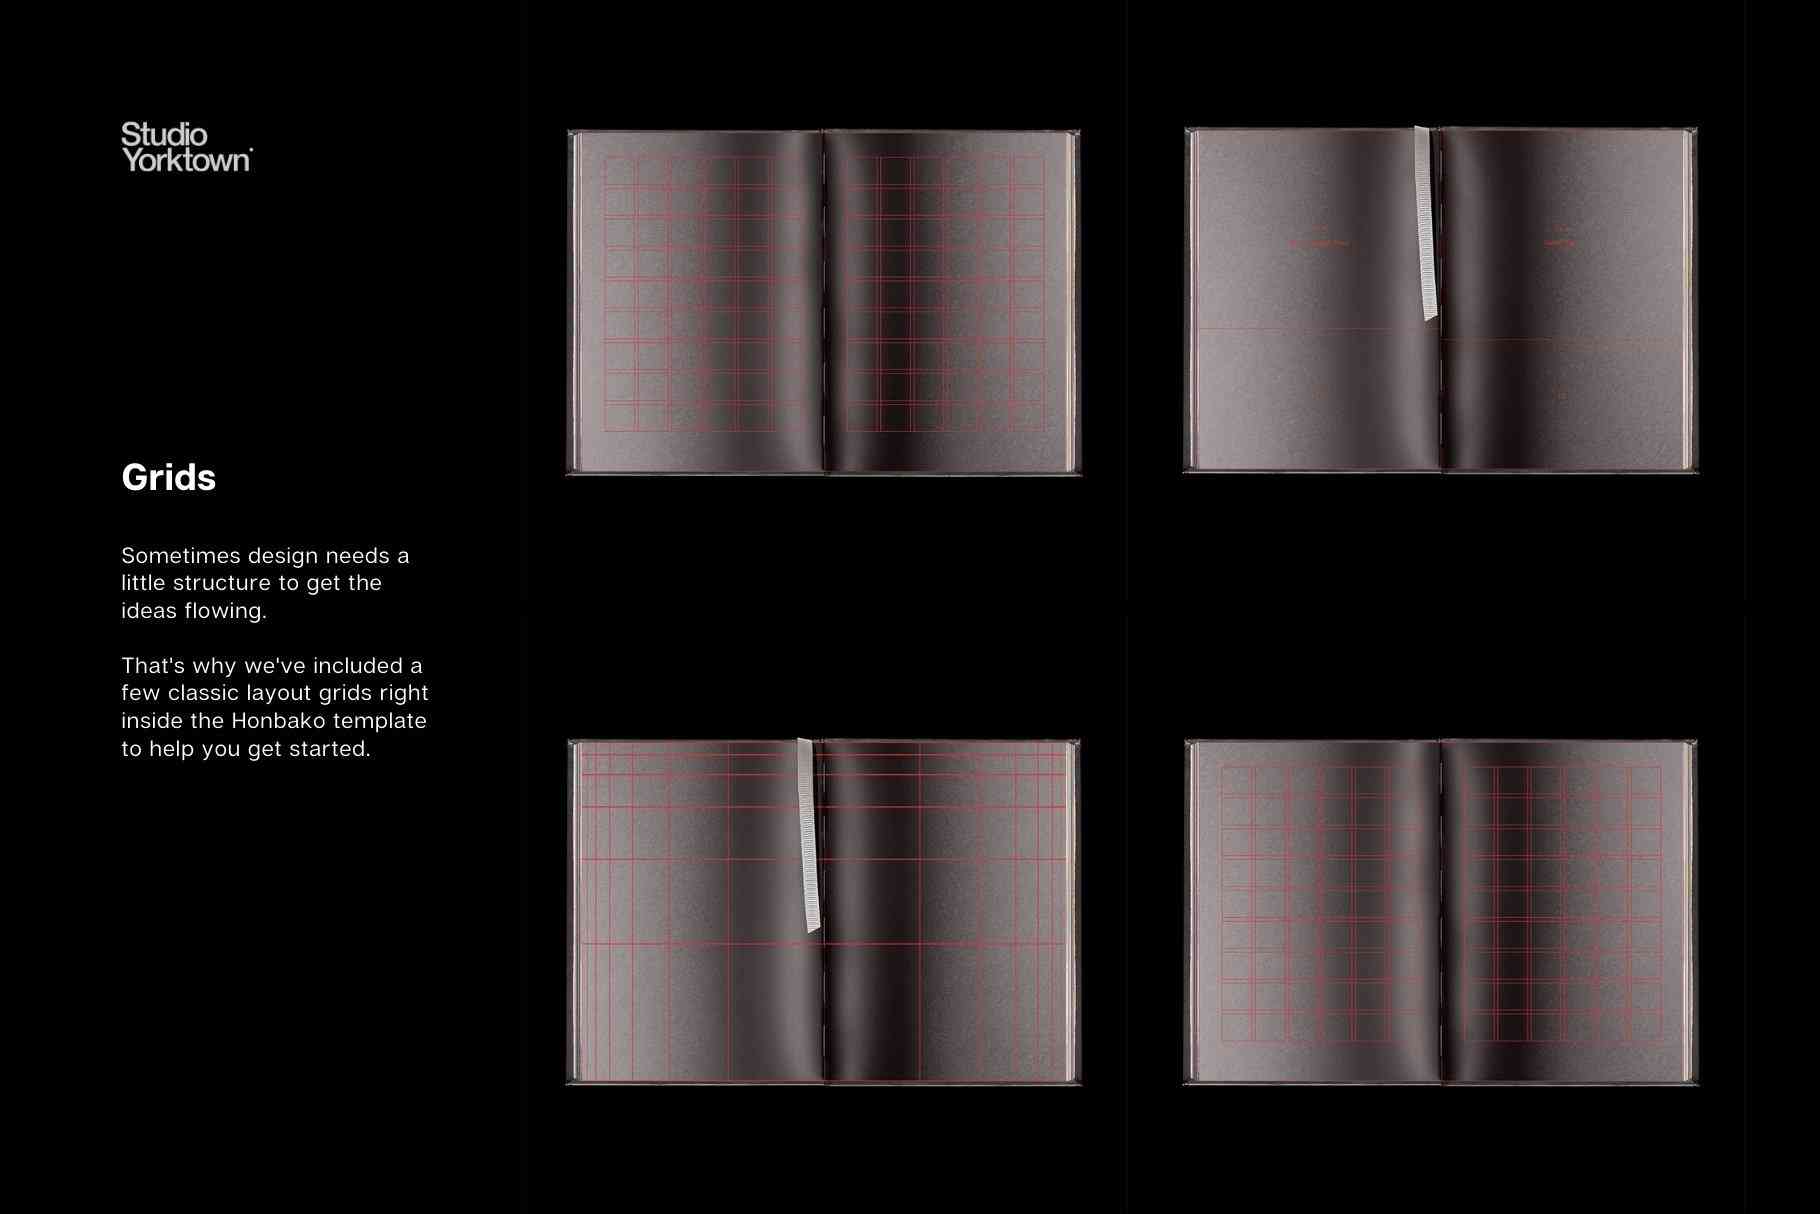 硬面精装画册书籍装帧工艺封面设计PSD智能贴图样机模板 Honbako Book Design Mockup Template